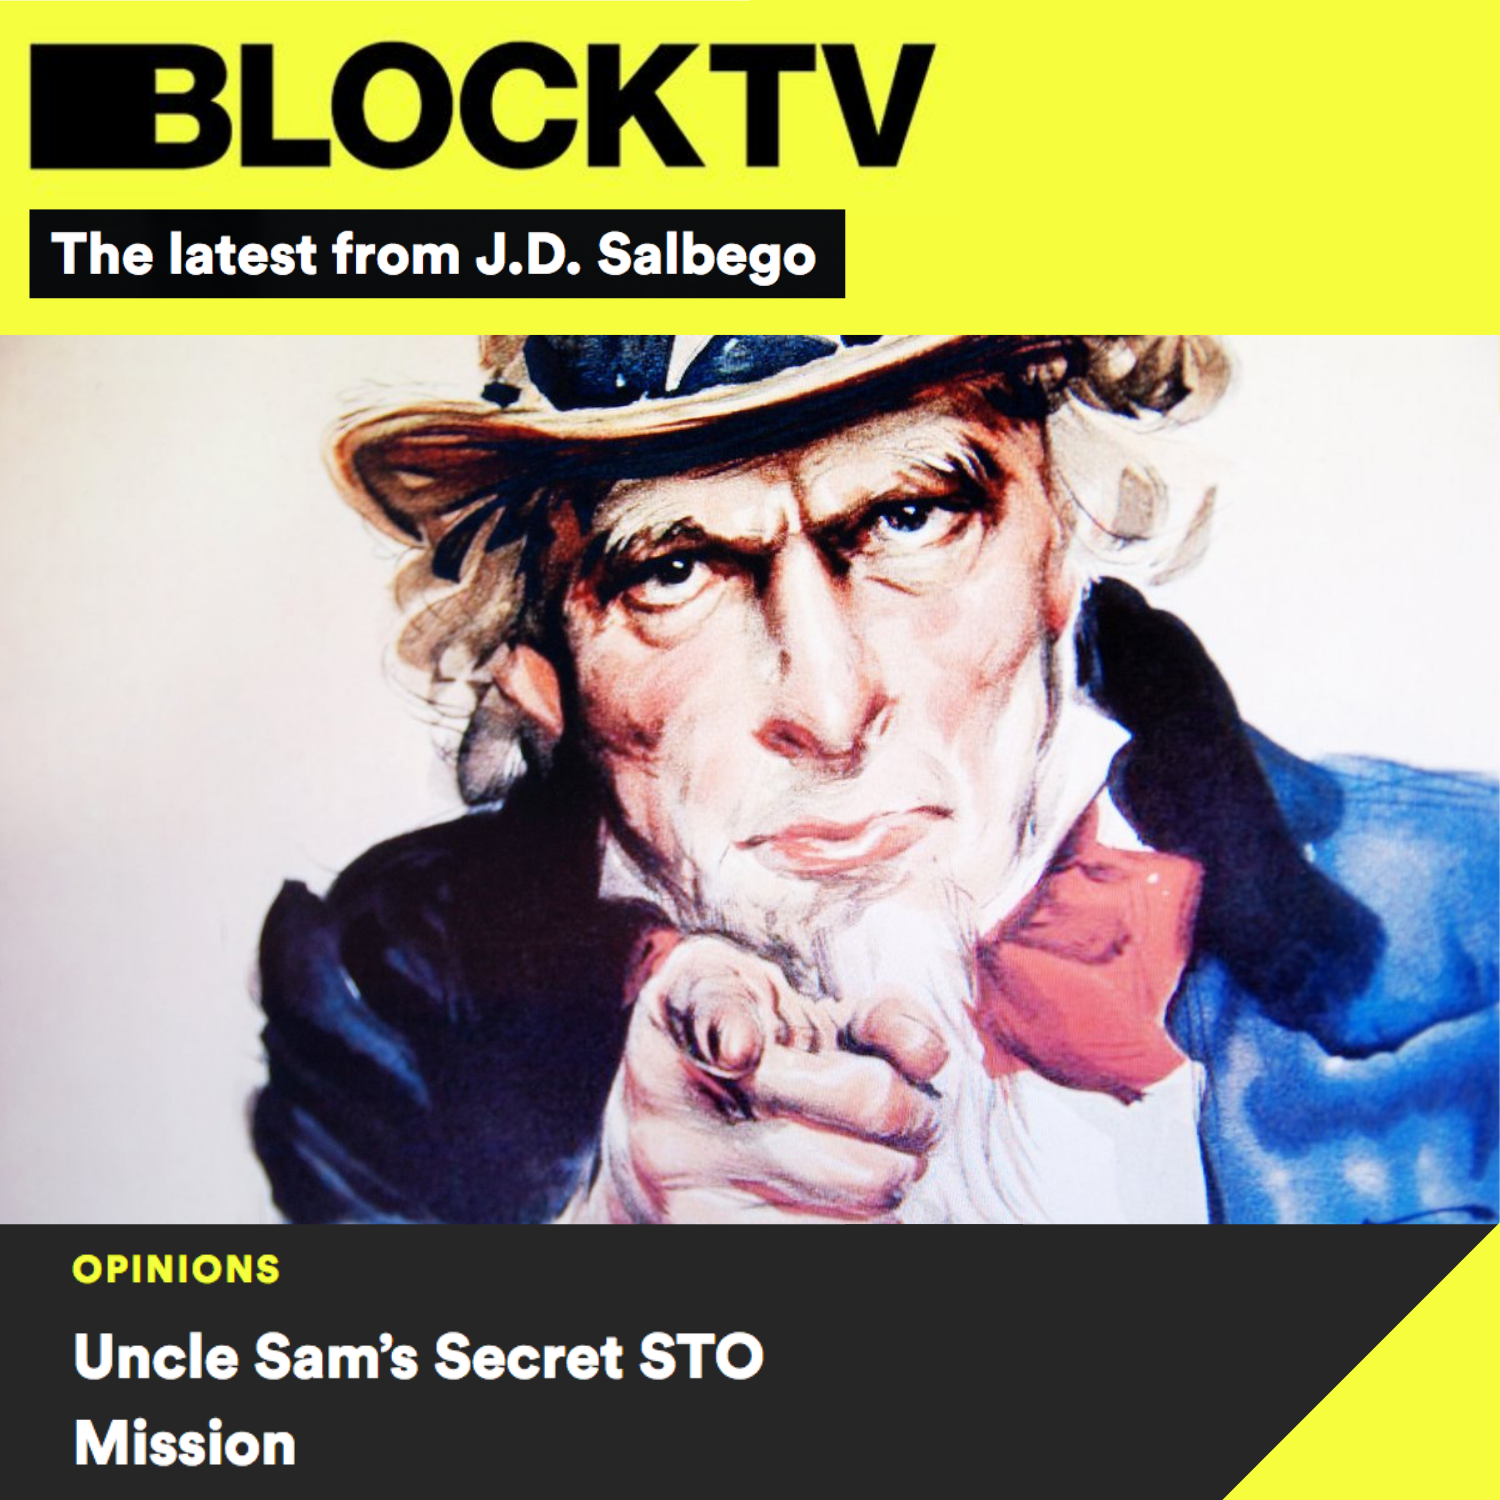 J.D. Salbego STO Article on BlockTV